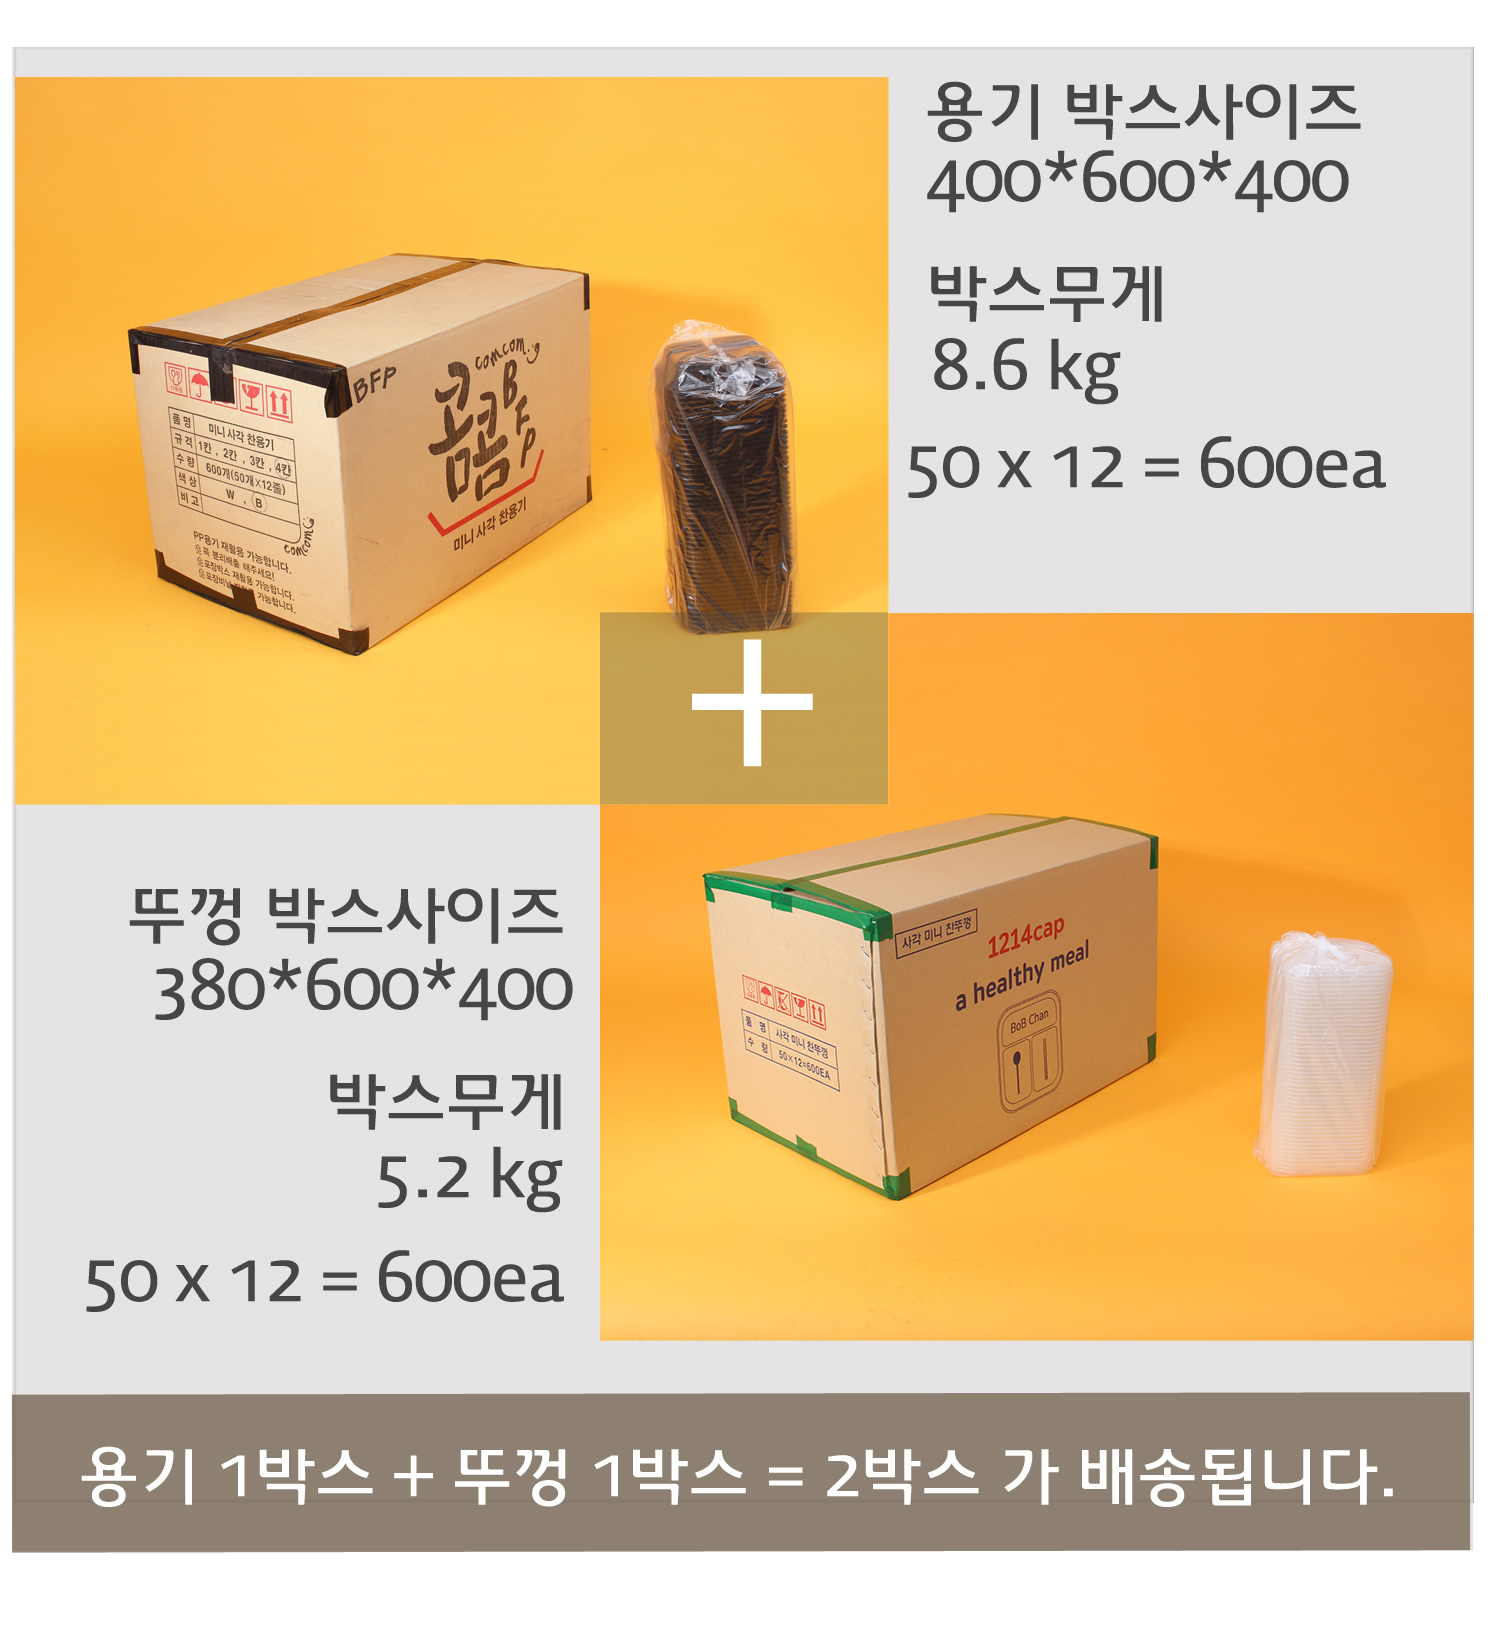 배송되는 포장용기의 박스 이미지와 사이즈 무게가 표기되어있다.